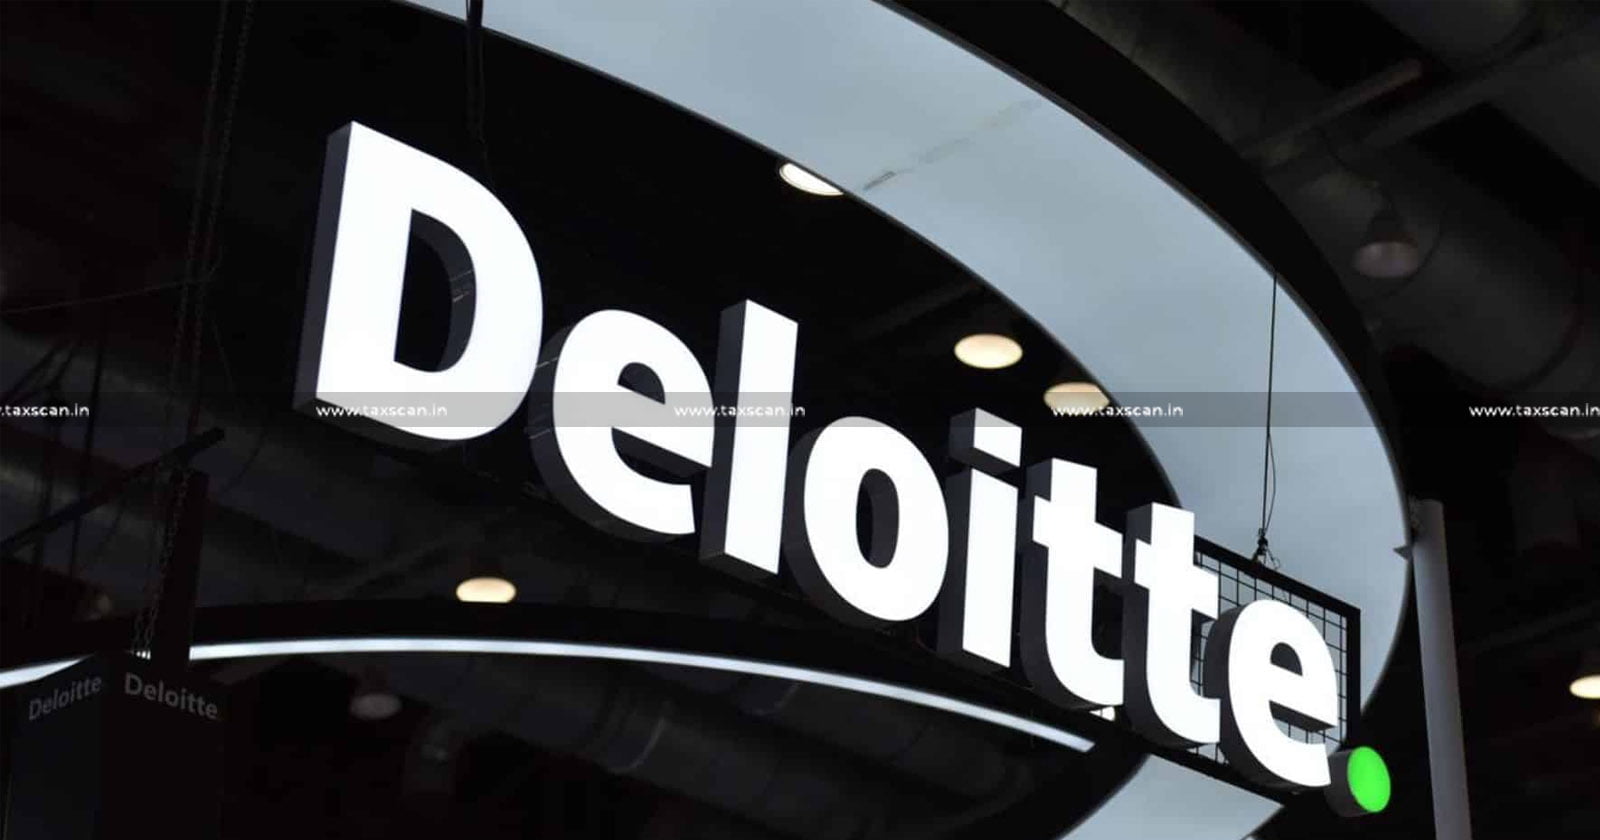 CA Vacancy In Deloitte - MBA Vacancy In Deloitte - CA Careers In Deloitte - MBA Careers In Deloitte - CA Jobs In Deloitte - MBA Jobs In Deloitte - CA Jobs - MBA Jobs - CA Carees - MBA Careers - CA Vacancies - Job Scan